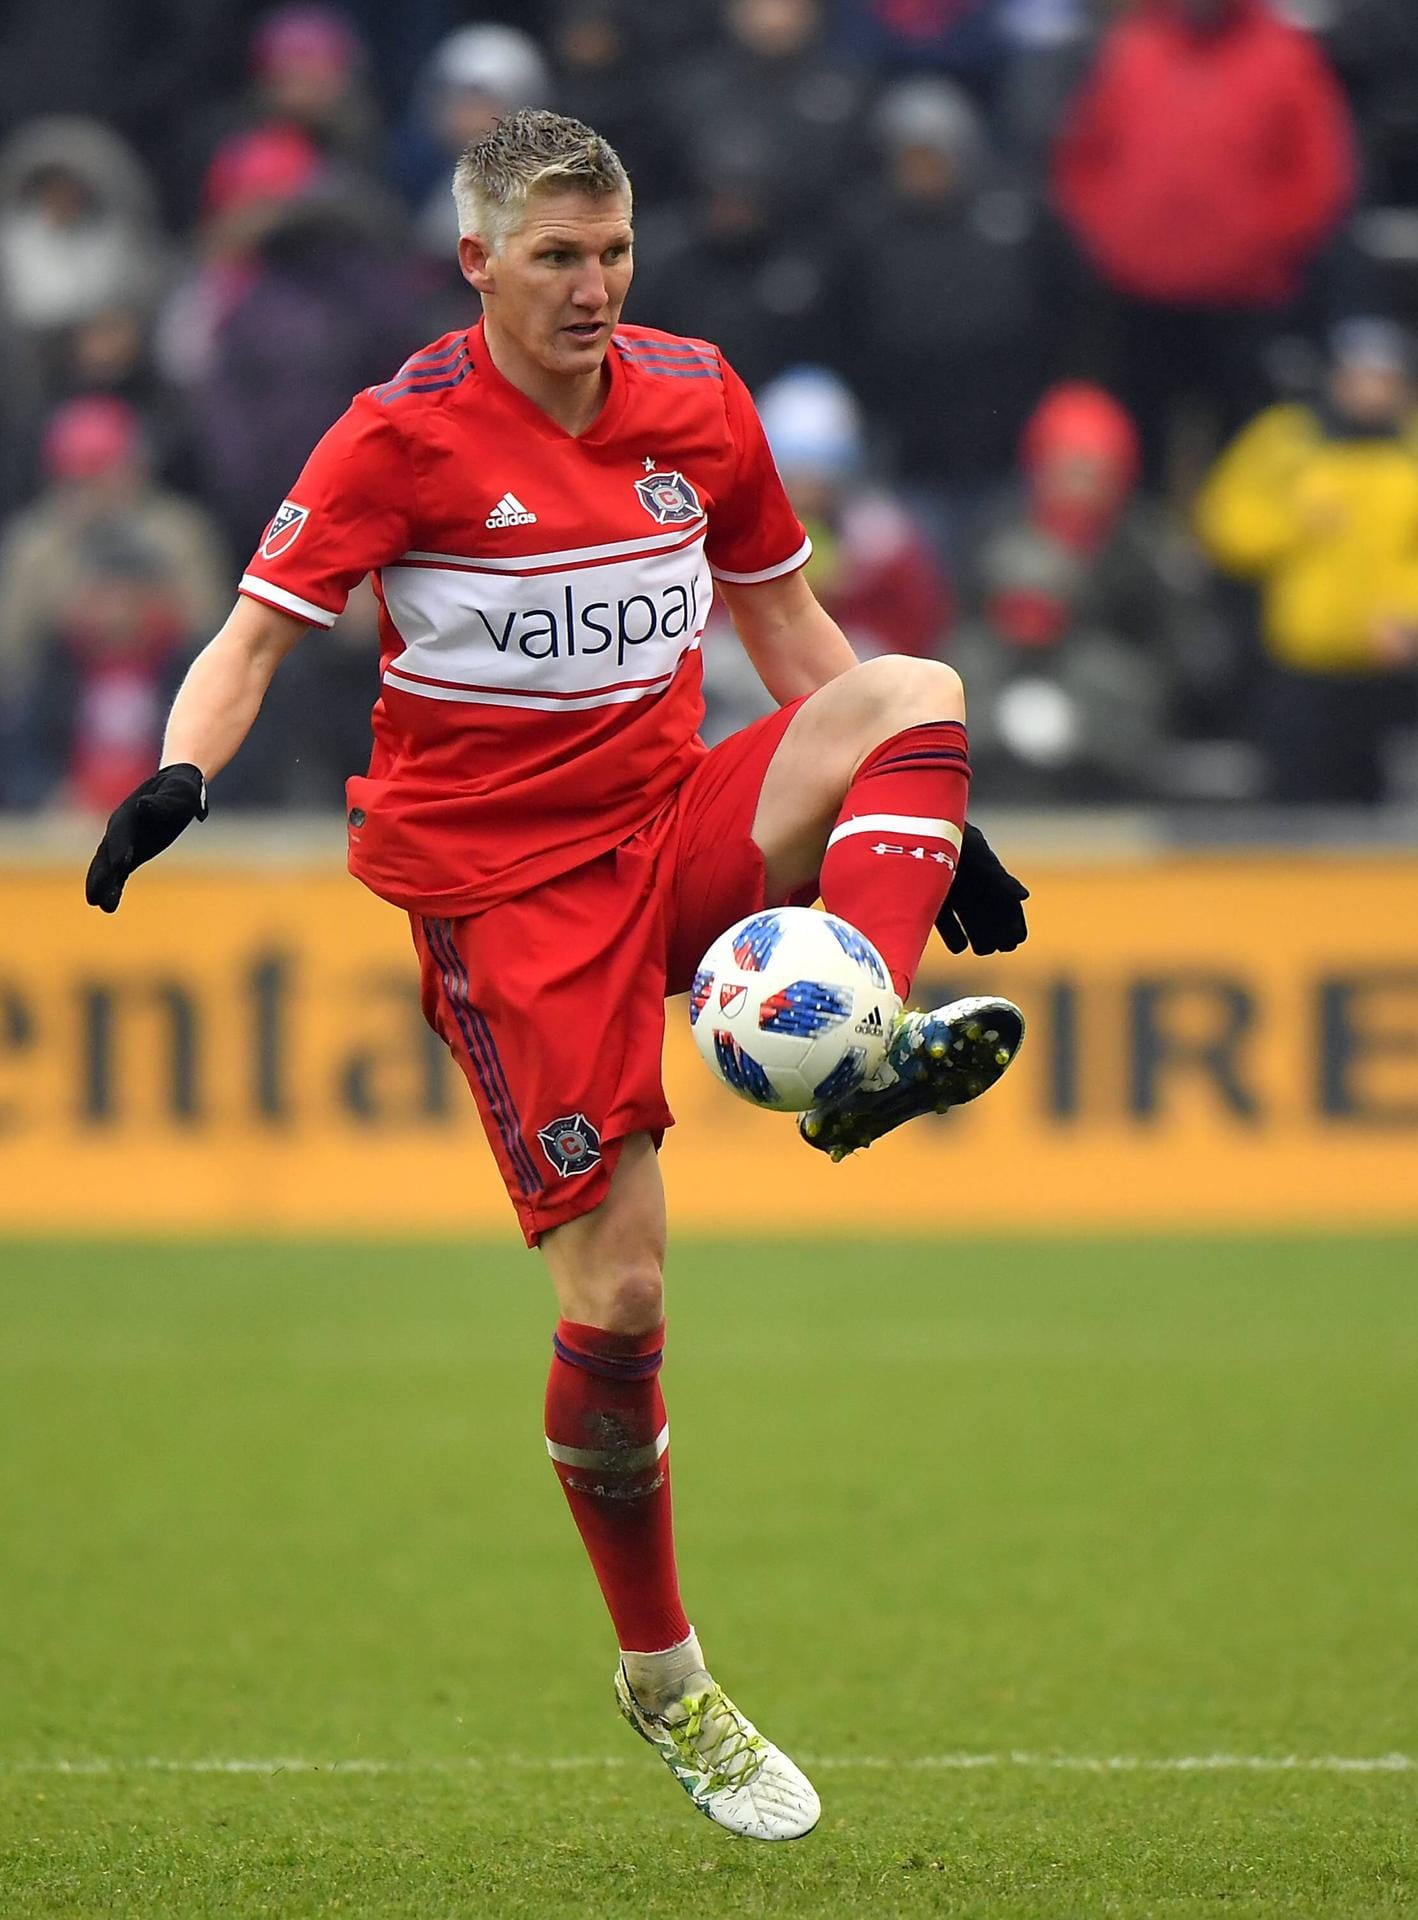 Bastian Schweinsteiger: Seine Karriere im DFB-Team hat der 34-Jährige nach der EM 2016 beendet. Seit 2017 spielt der ehemalige Kapitän der Nationalmannschaft bei Chicago Fire in den USA.